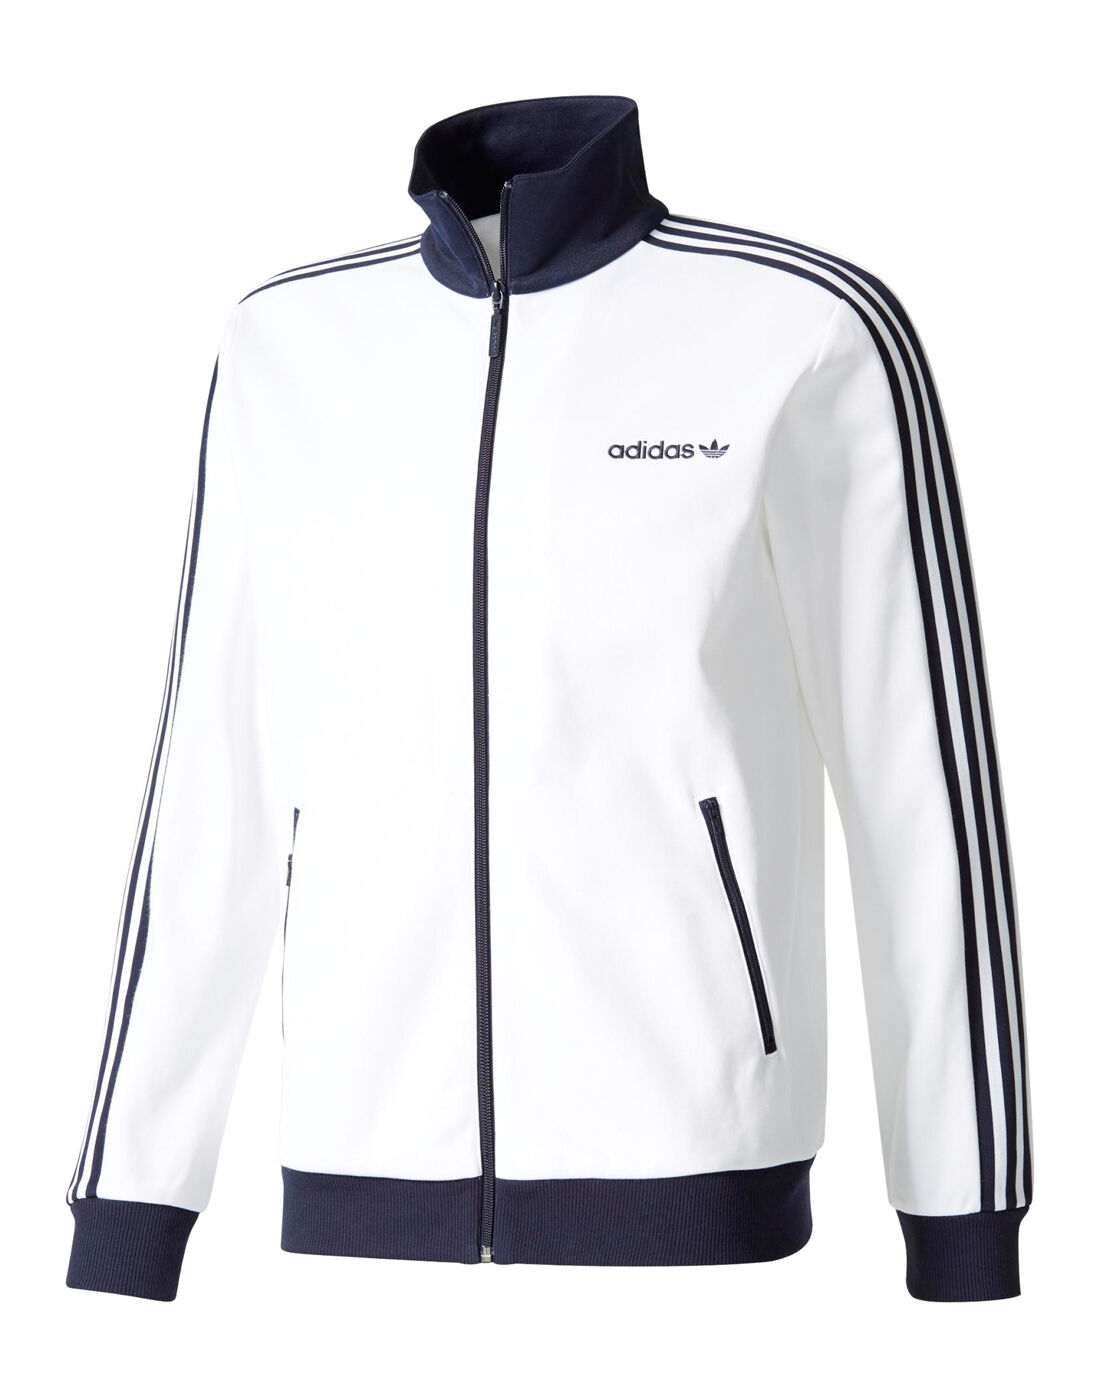 adidas track jacket uk